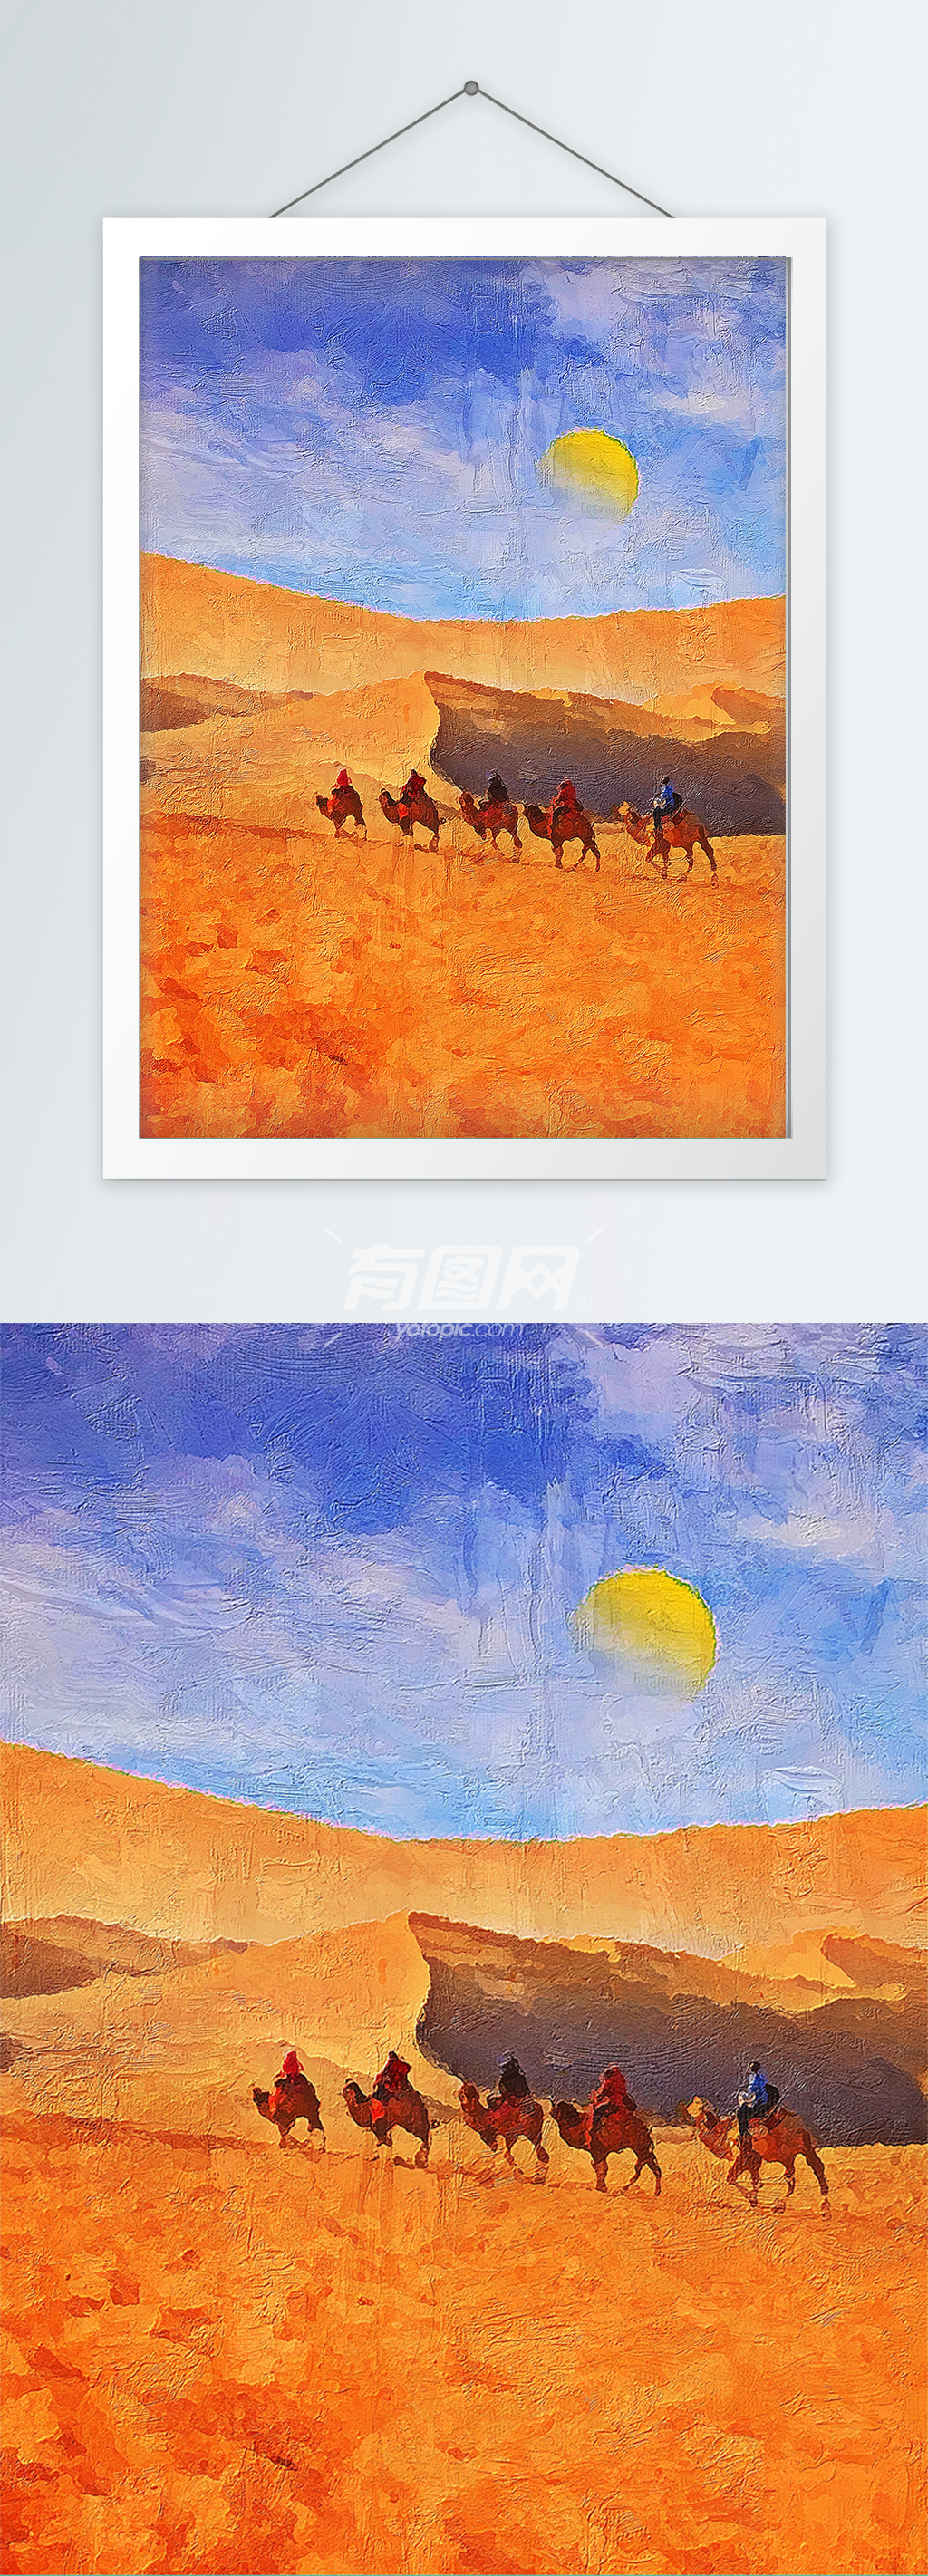 沙漠骆驼风景油画